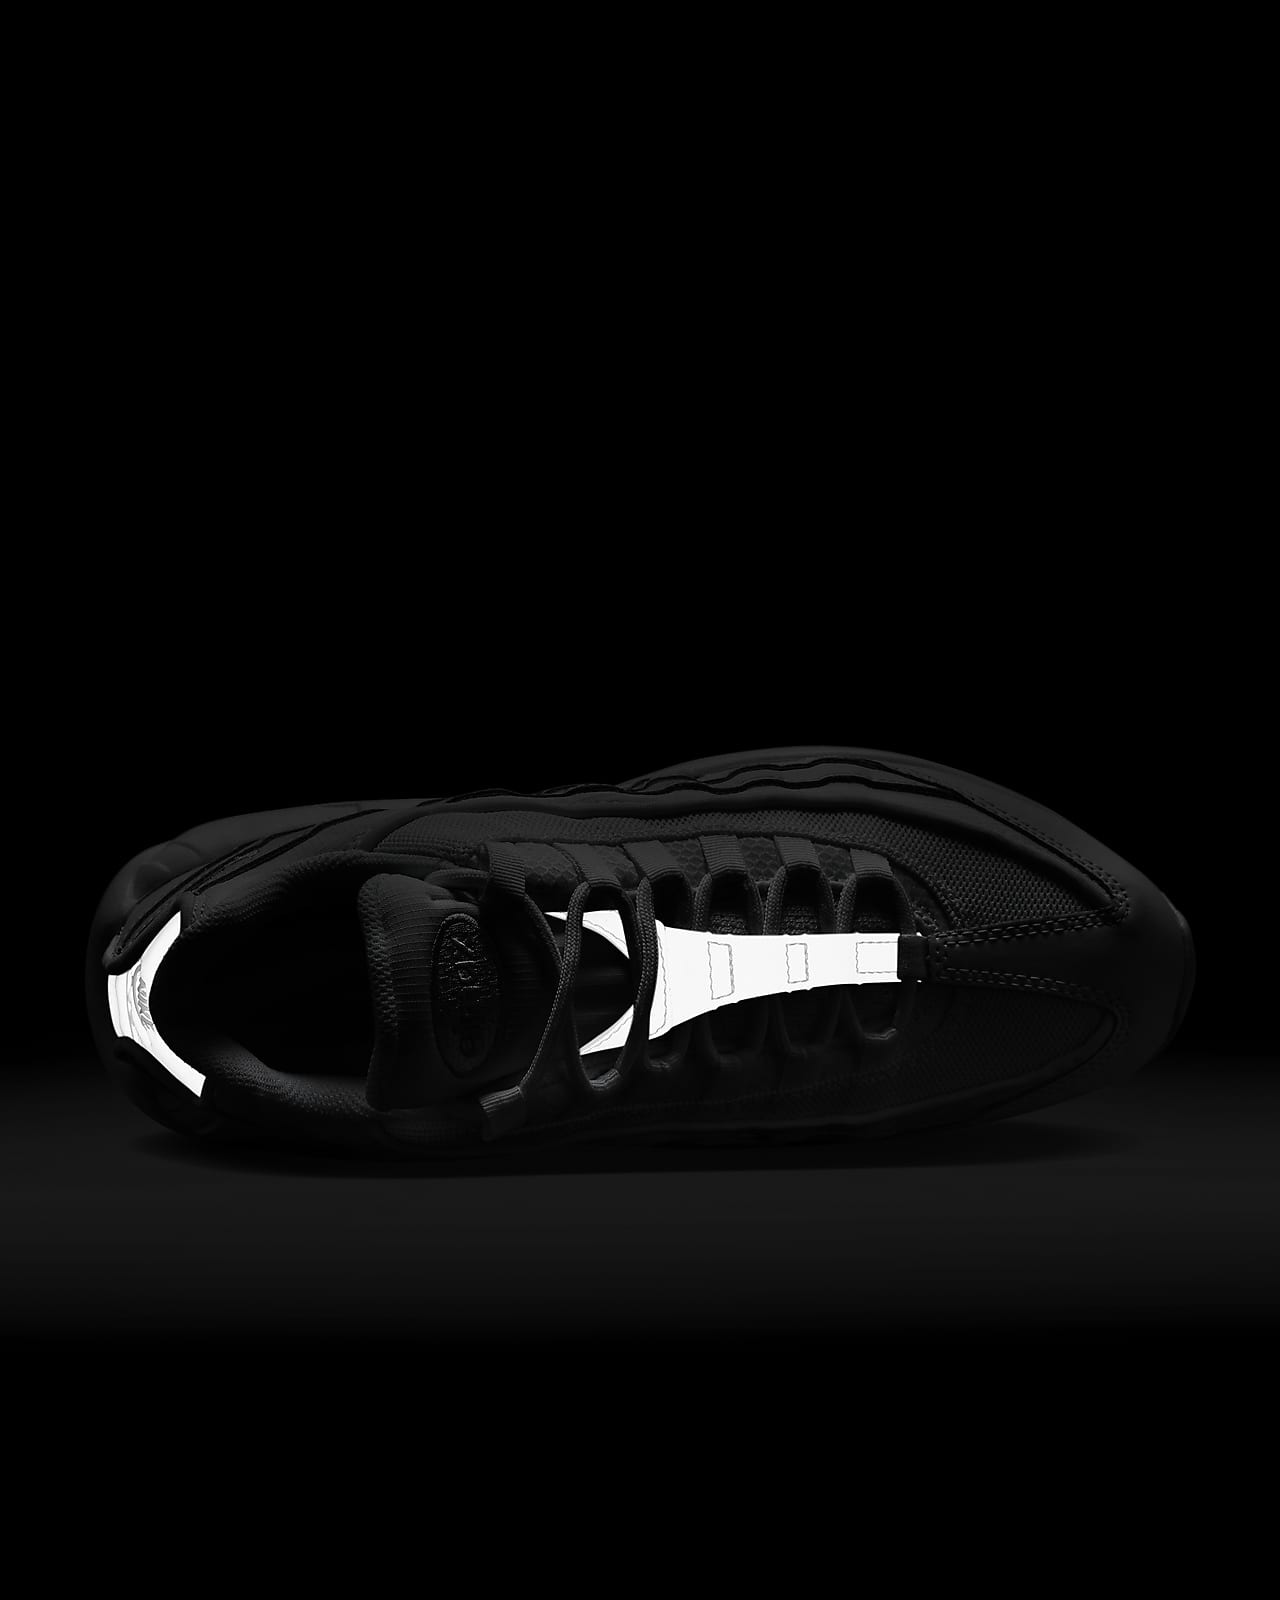 Ter ere van Wolk Parasiet Nike Air Max 95 Essential Men's Shoes. Nike.com